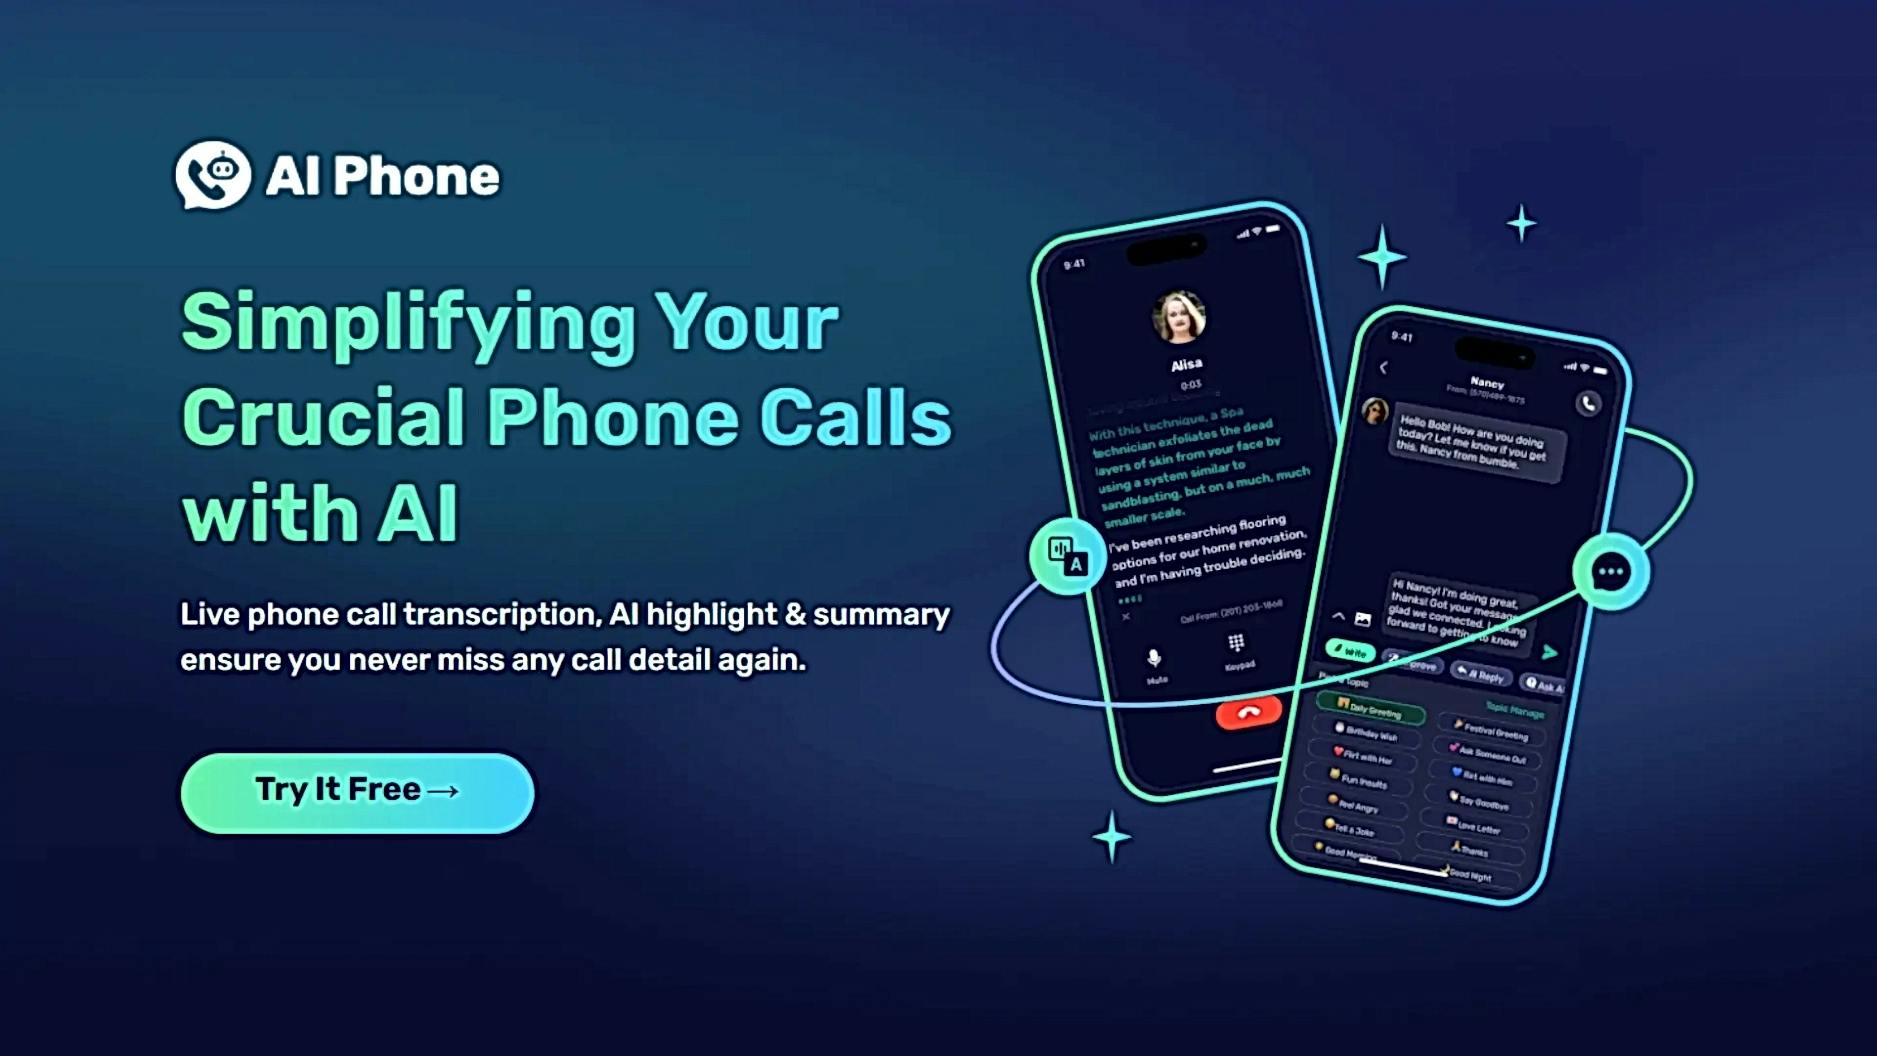 AI Phone featured